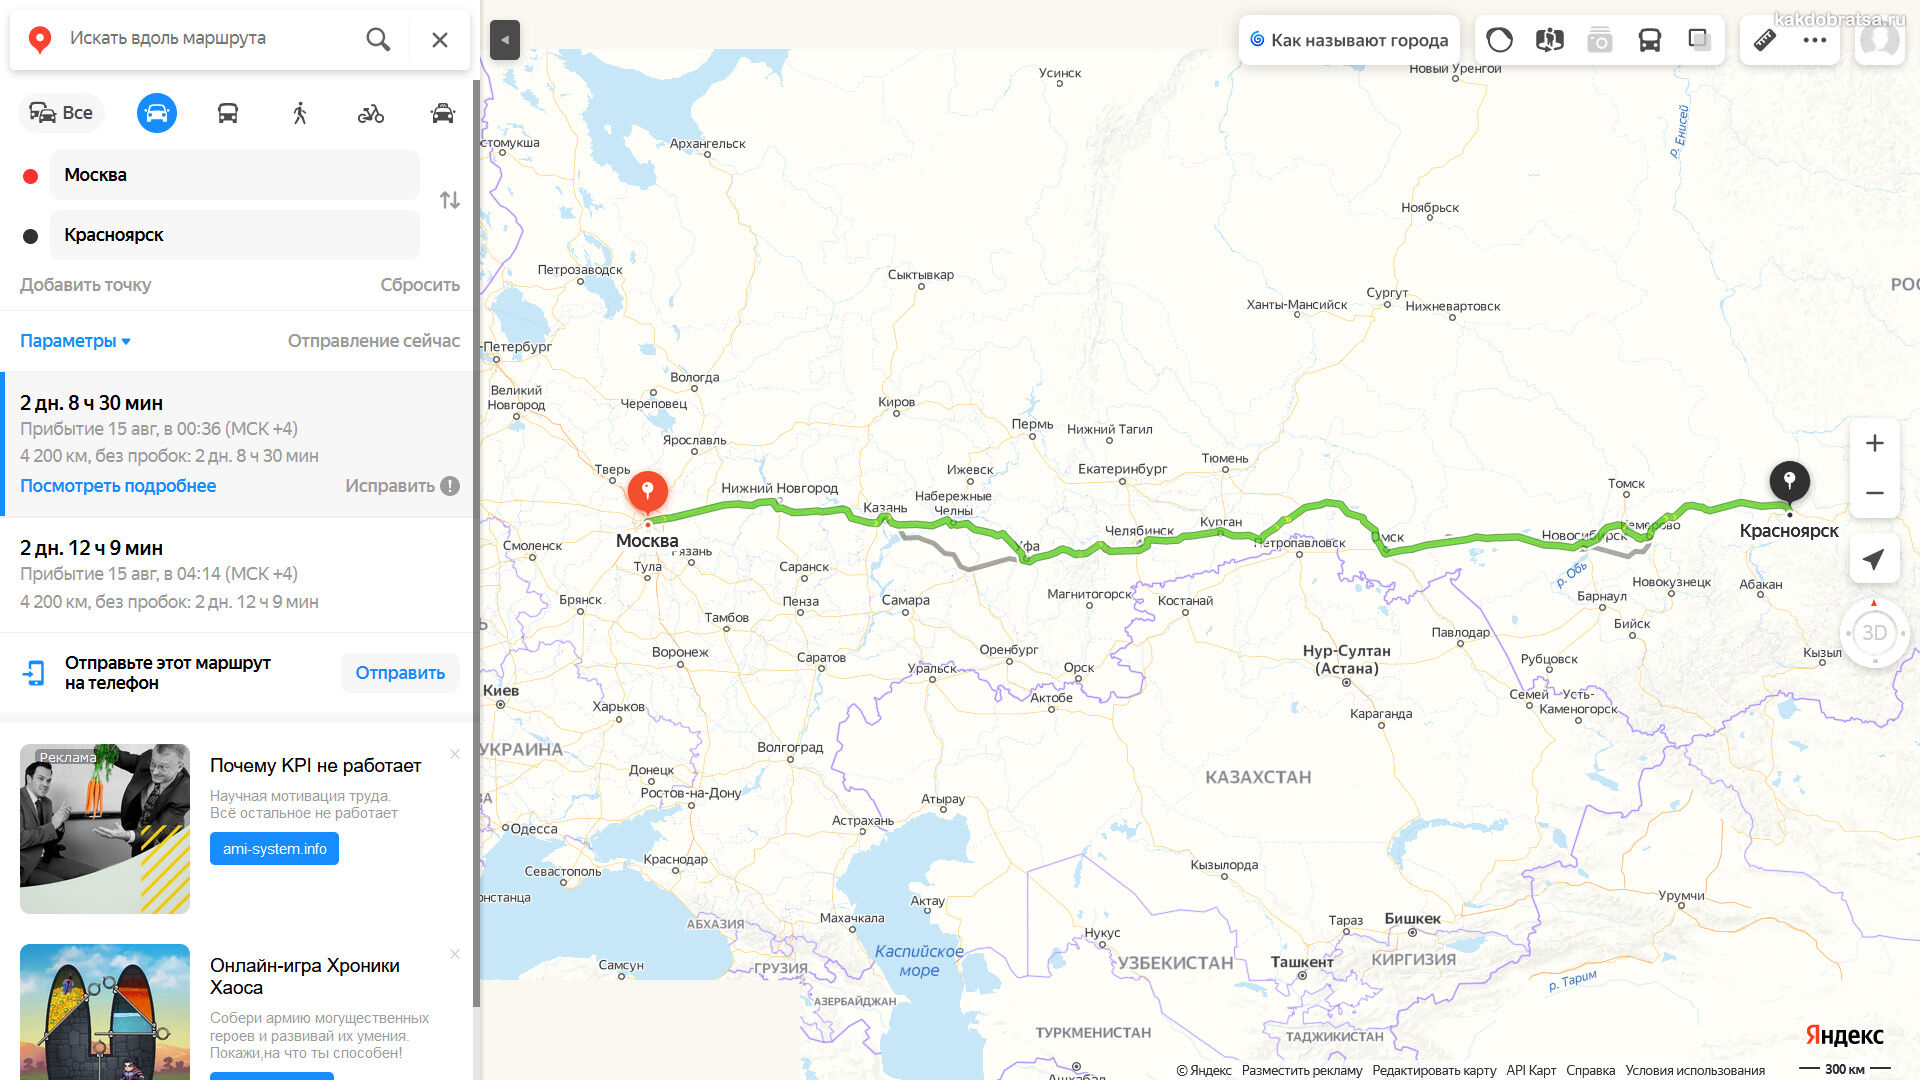 Расстояние между Москвой и Красноярском по карте